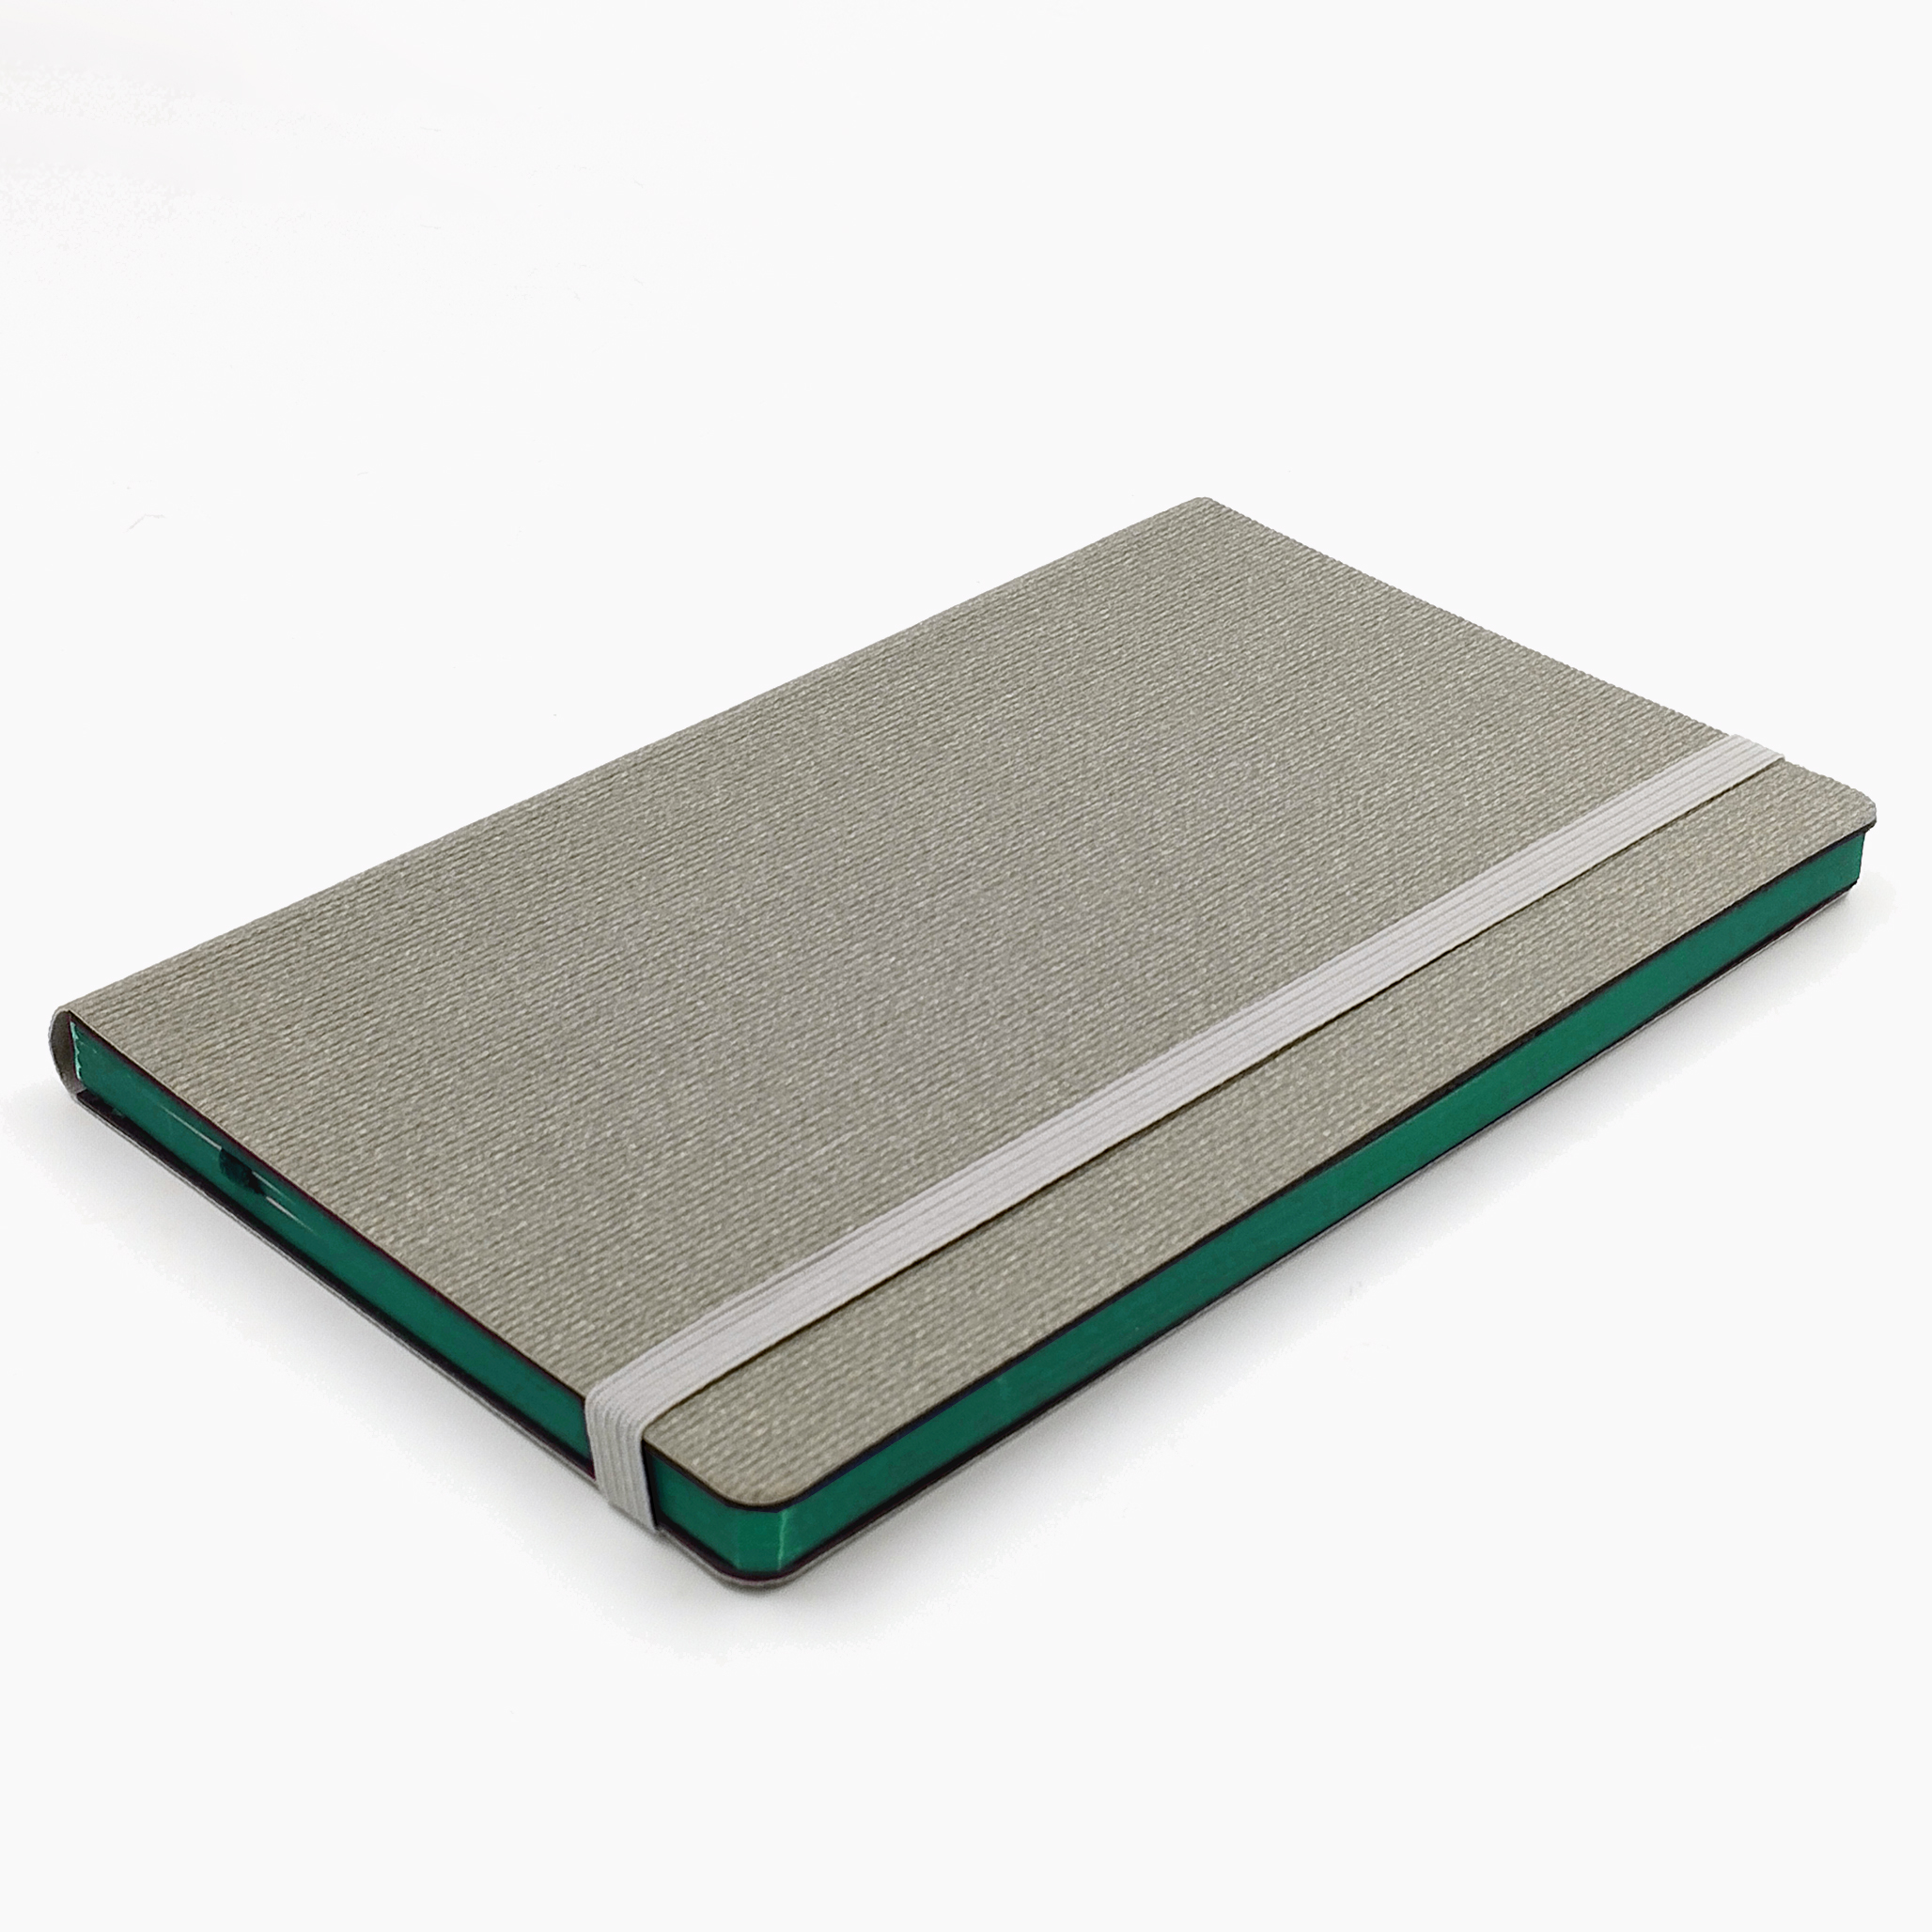 Записная книга V62 13х21 см CORDUROY FLEX серый тонир. бумага зелёный срез